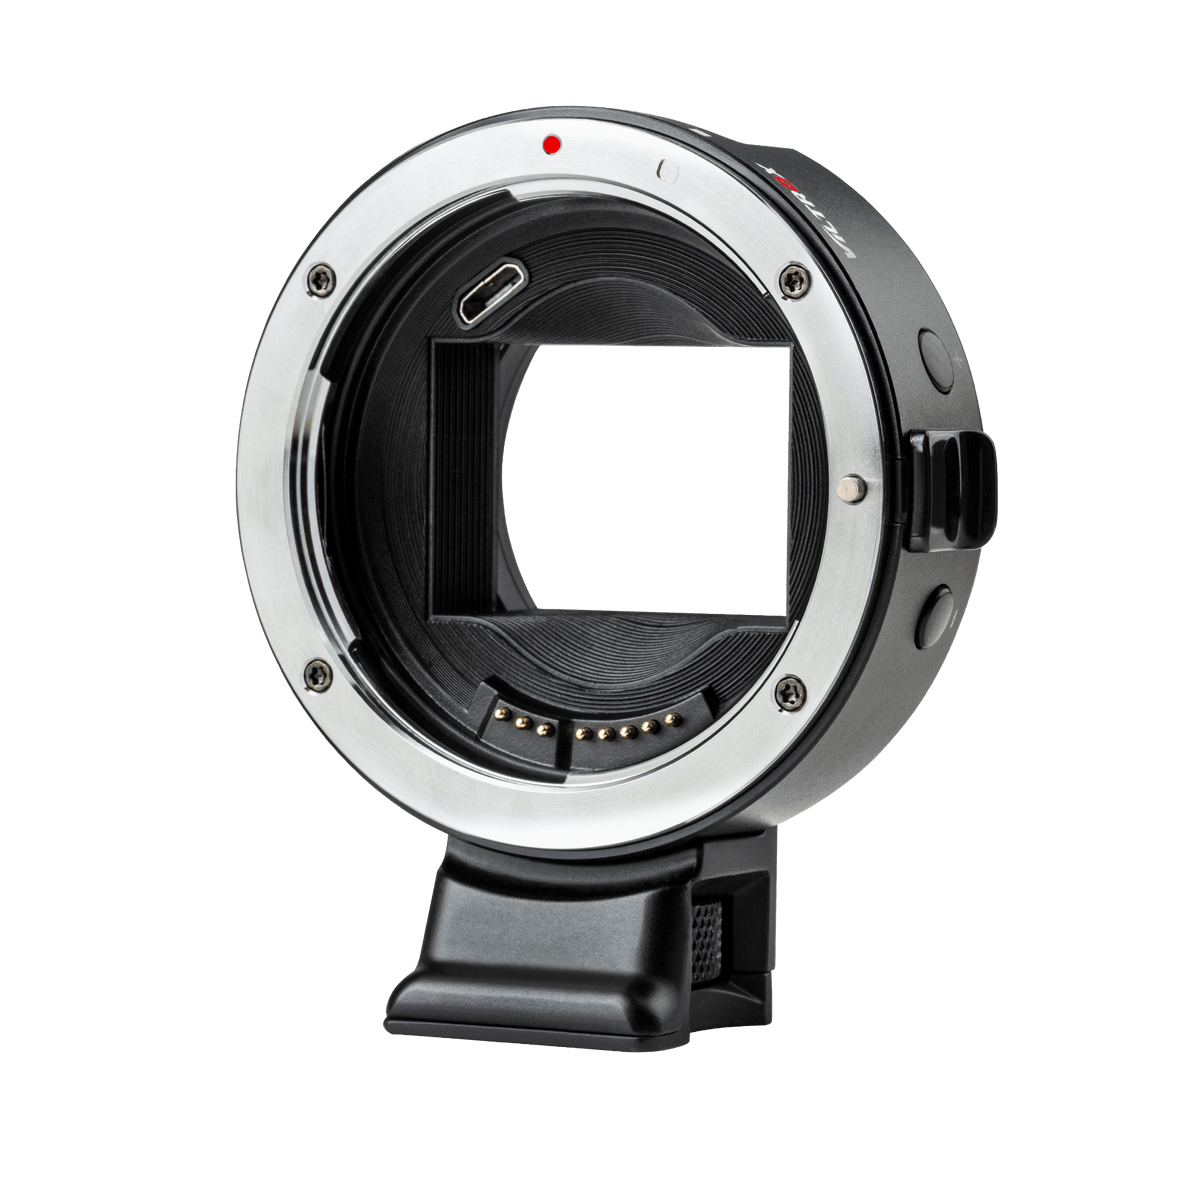 Rollei Objektive Viltrox EF-E5 Adapter für Canon-EF/EF-S-Objektive an Sony-E-Mount